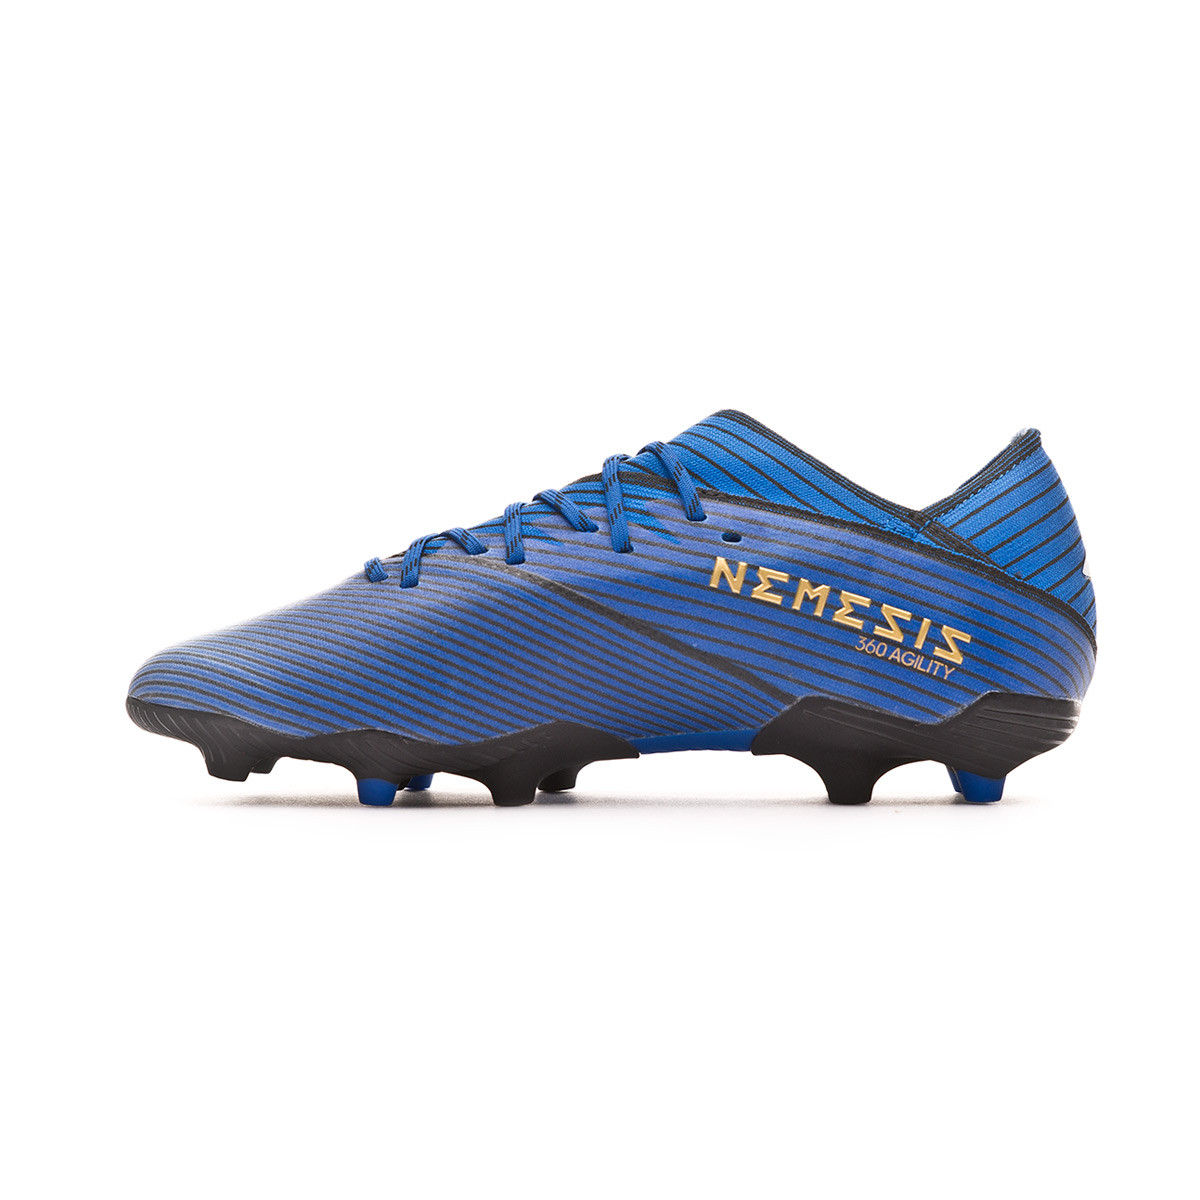 blue nemeziz football boots